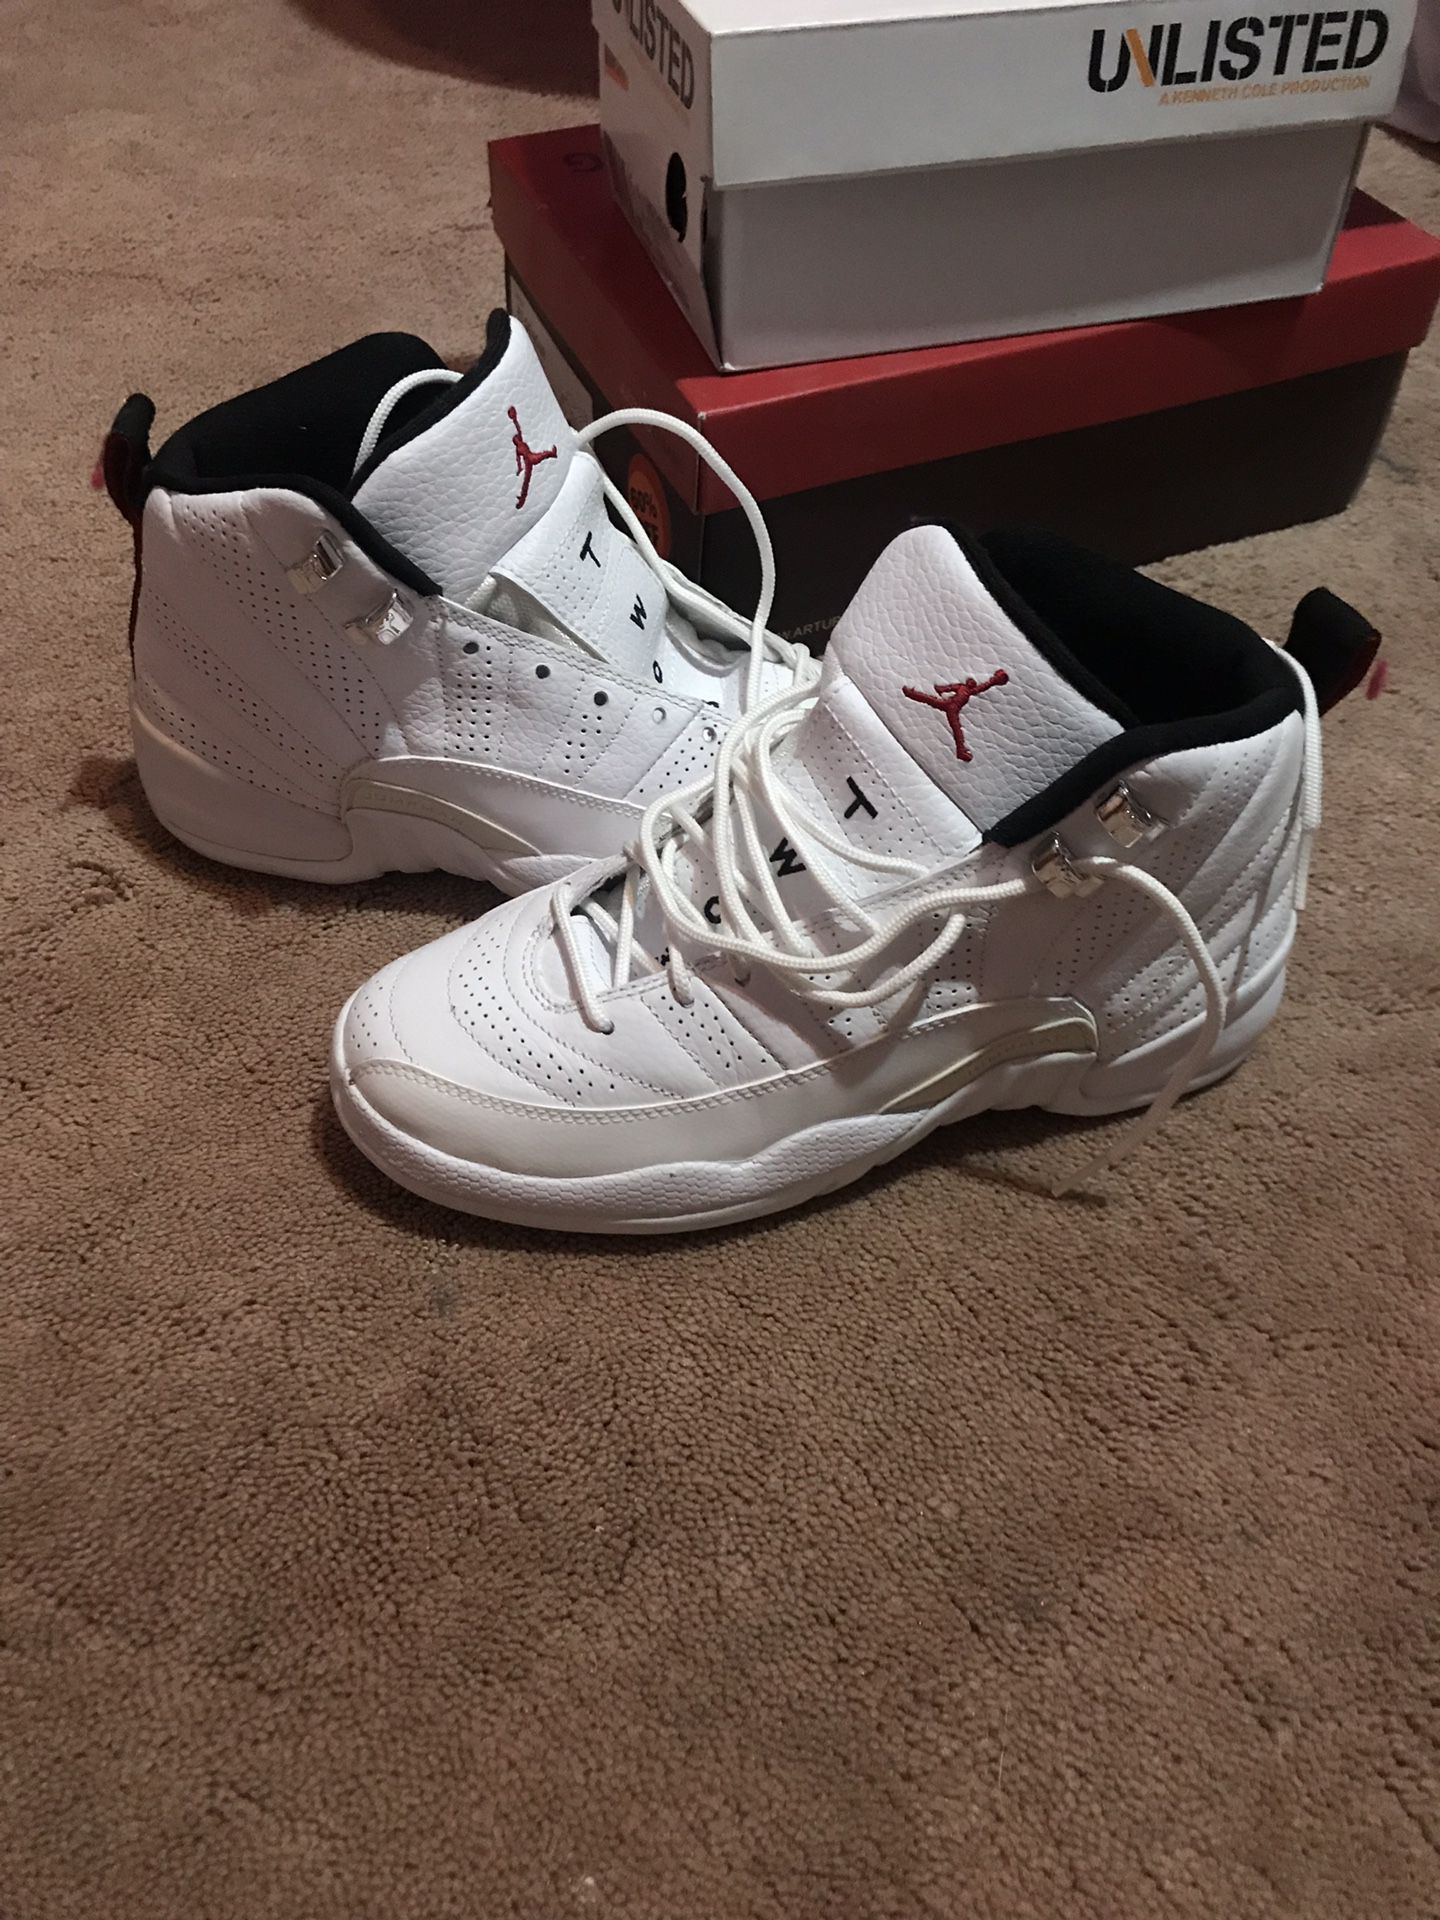 Air Jordans 12 Retro size 5.5